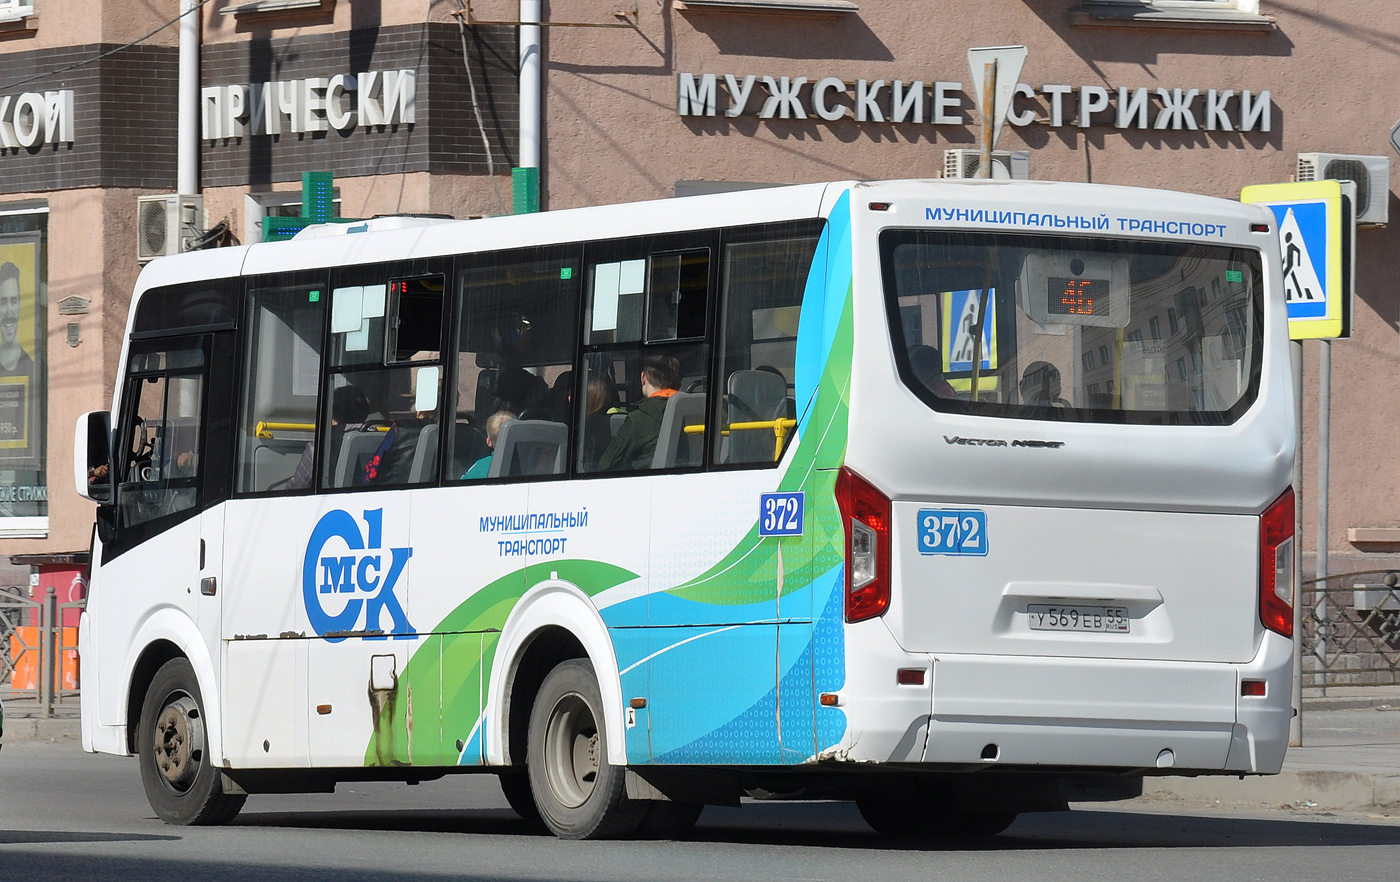 Omsk region, PAZ-320435-04 "Vector Next" Nr. 372